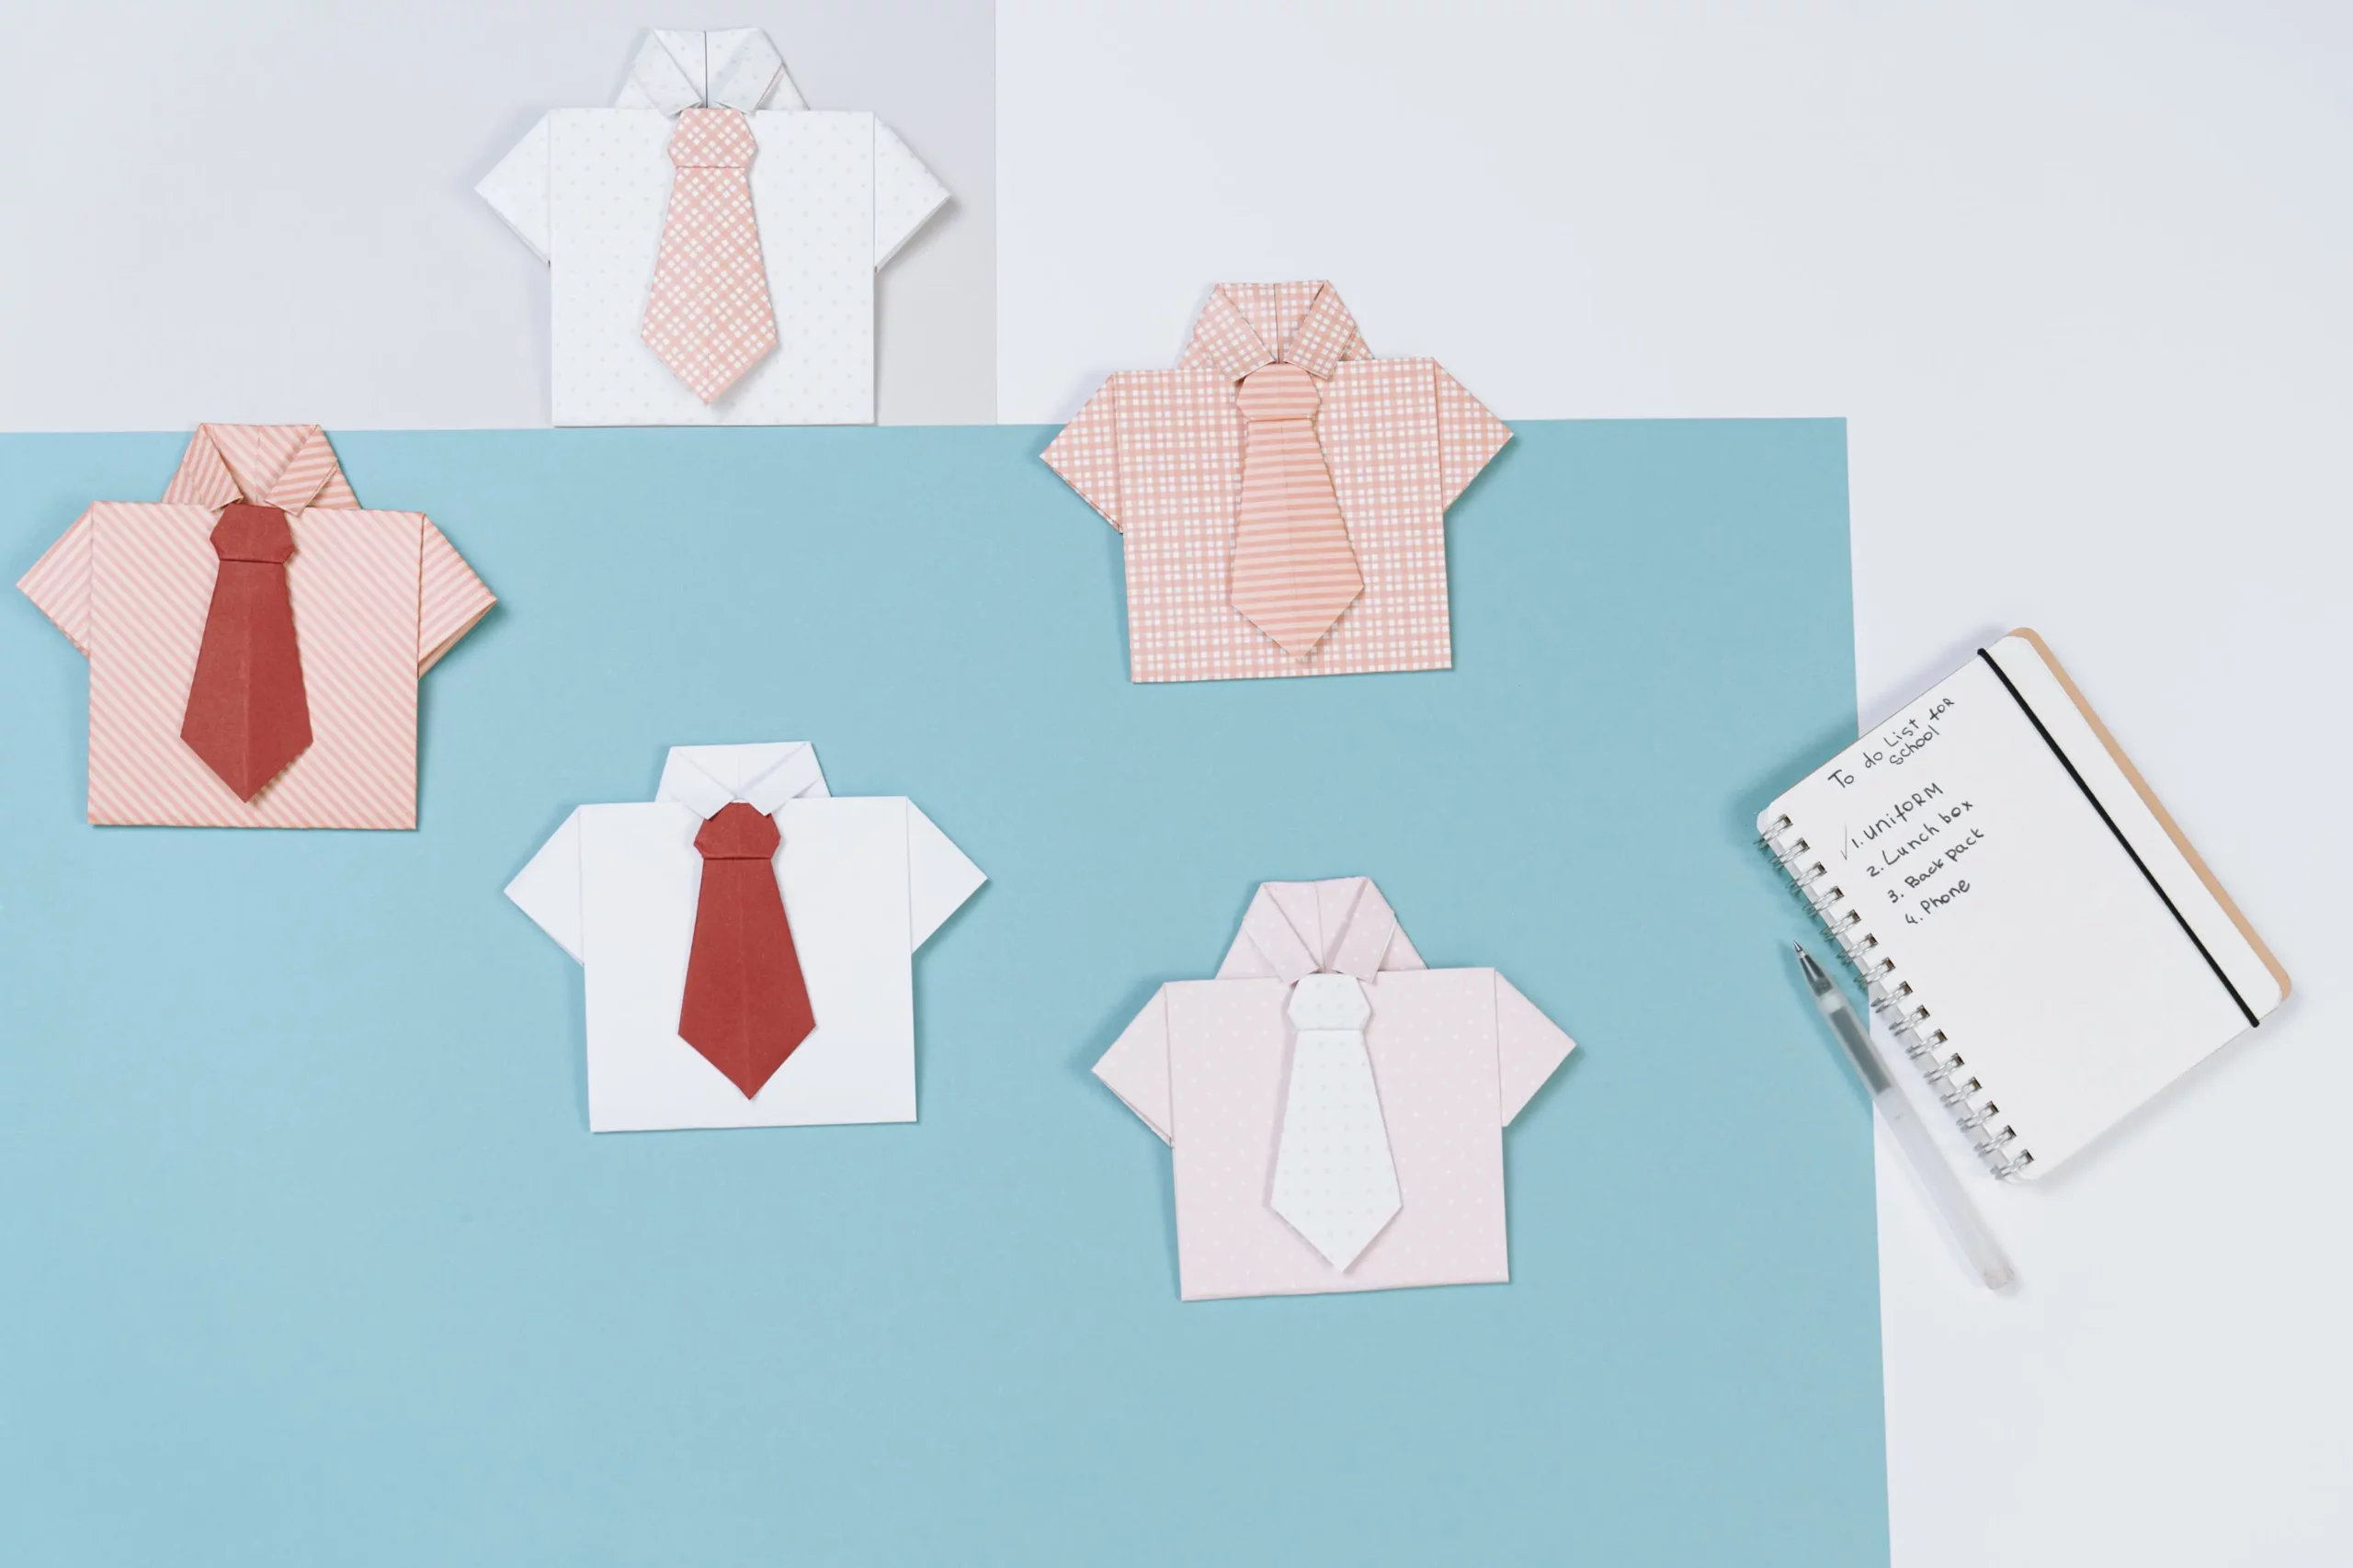 Camisas de origami que se relacionan con la construcción de una cultura de calidad dentro de las empresas.